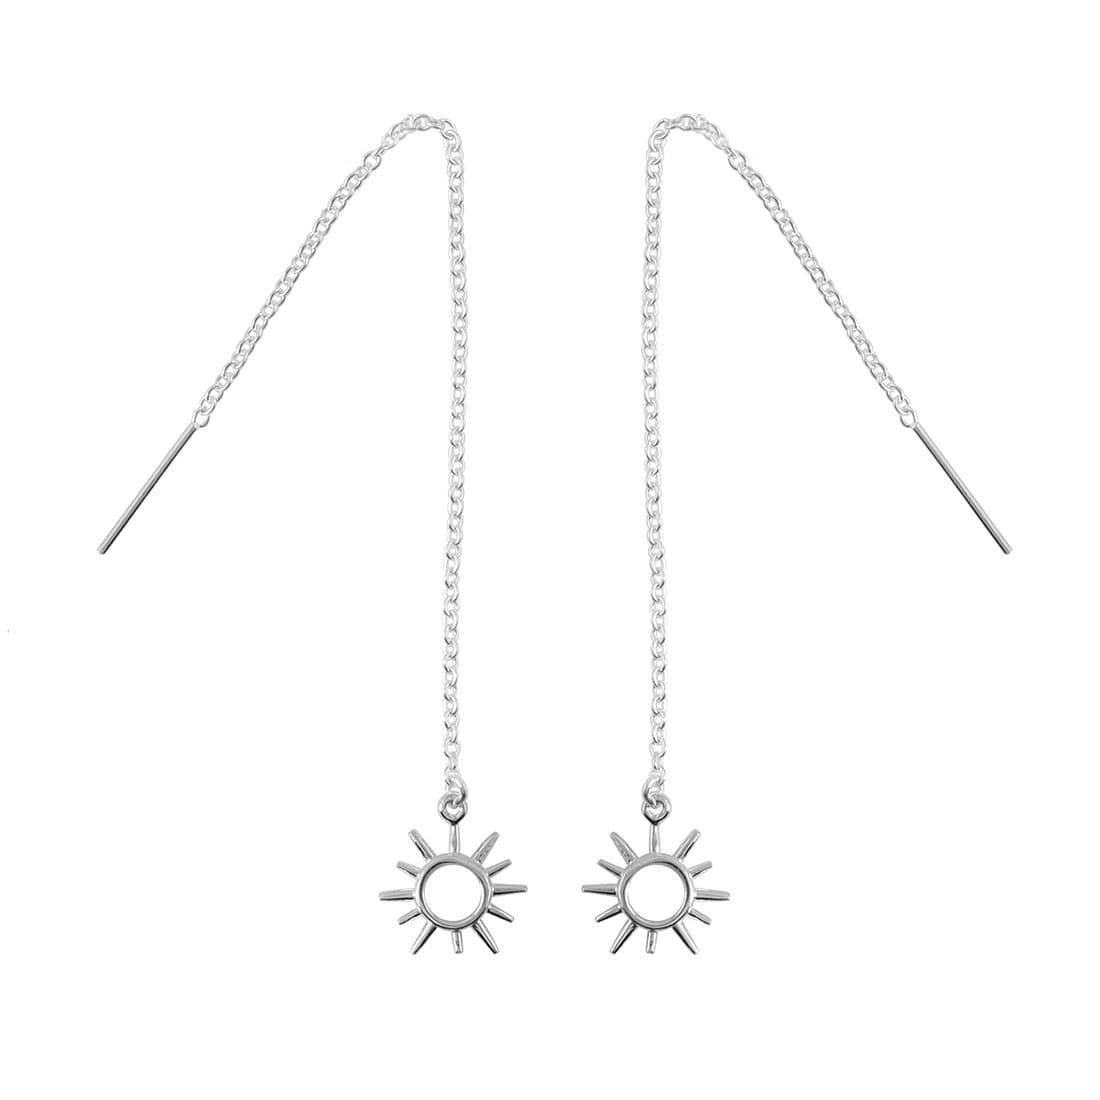 Midsummer Star Earrings Open Sunshine Threaders